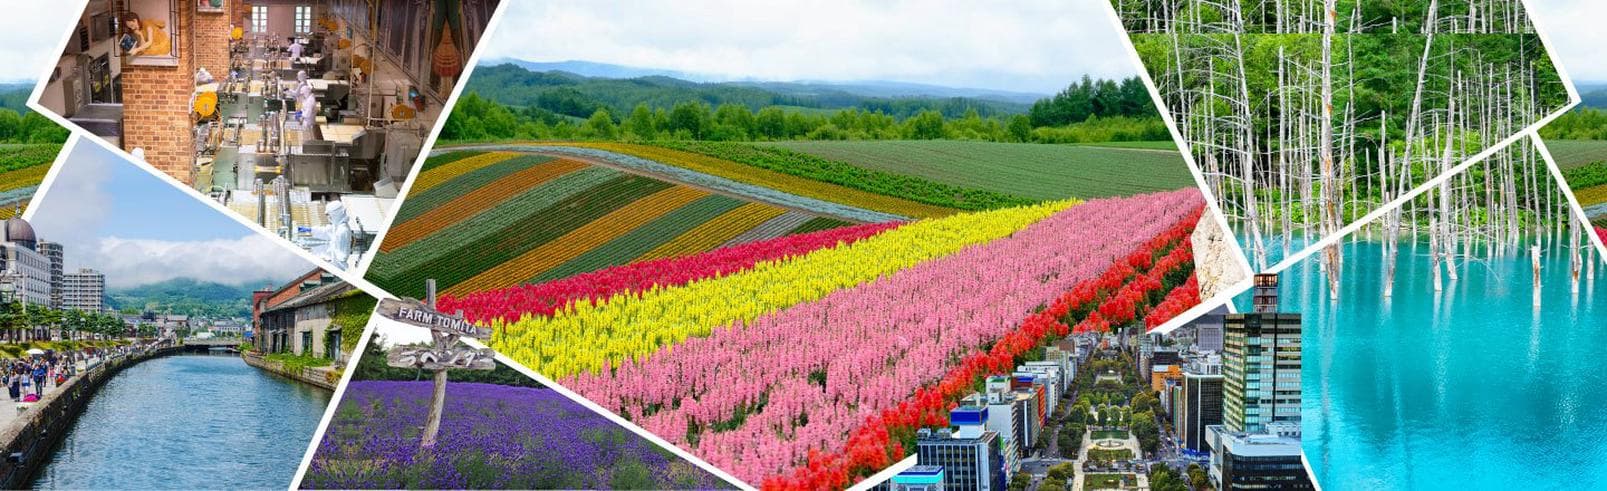 ทัวร์ญี่ปุ่น ฮอกไกโด 6 วัน 4 คืน ทุ่งดอกไม้สีรุ้ง โทมิตะ ฟาร์ม ทุ่งดอกลาเวนเดอร์  บิน TG